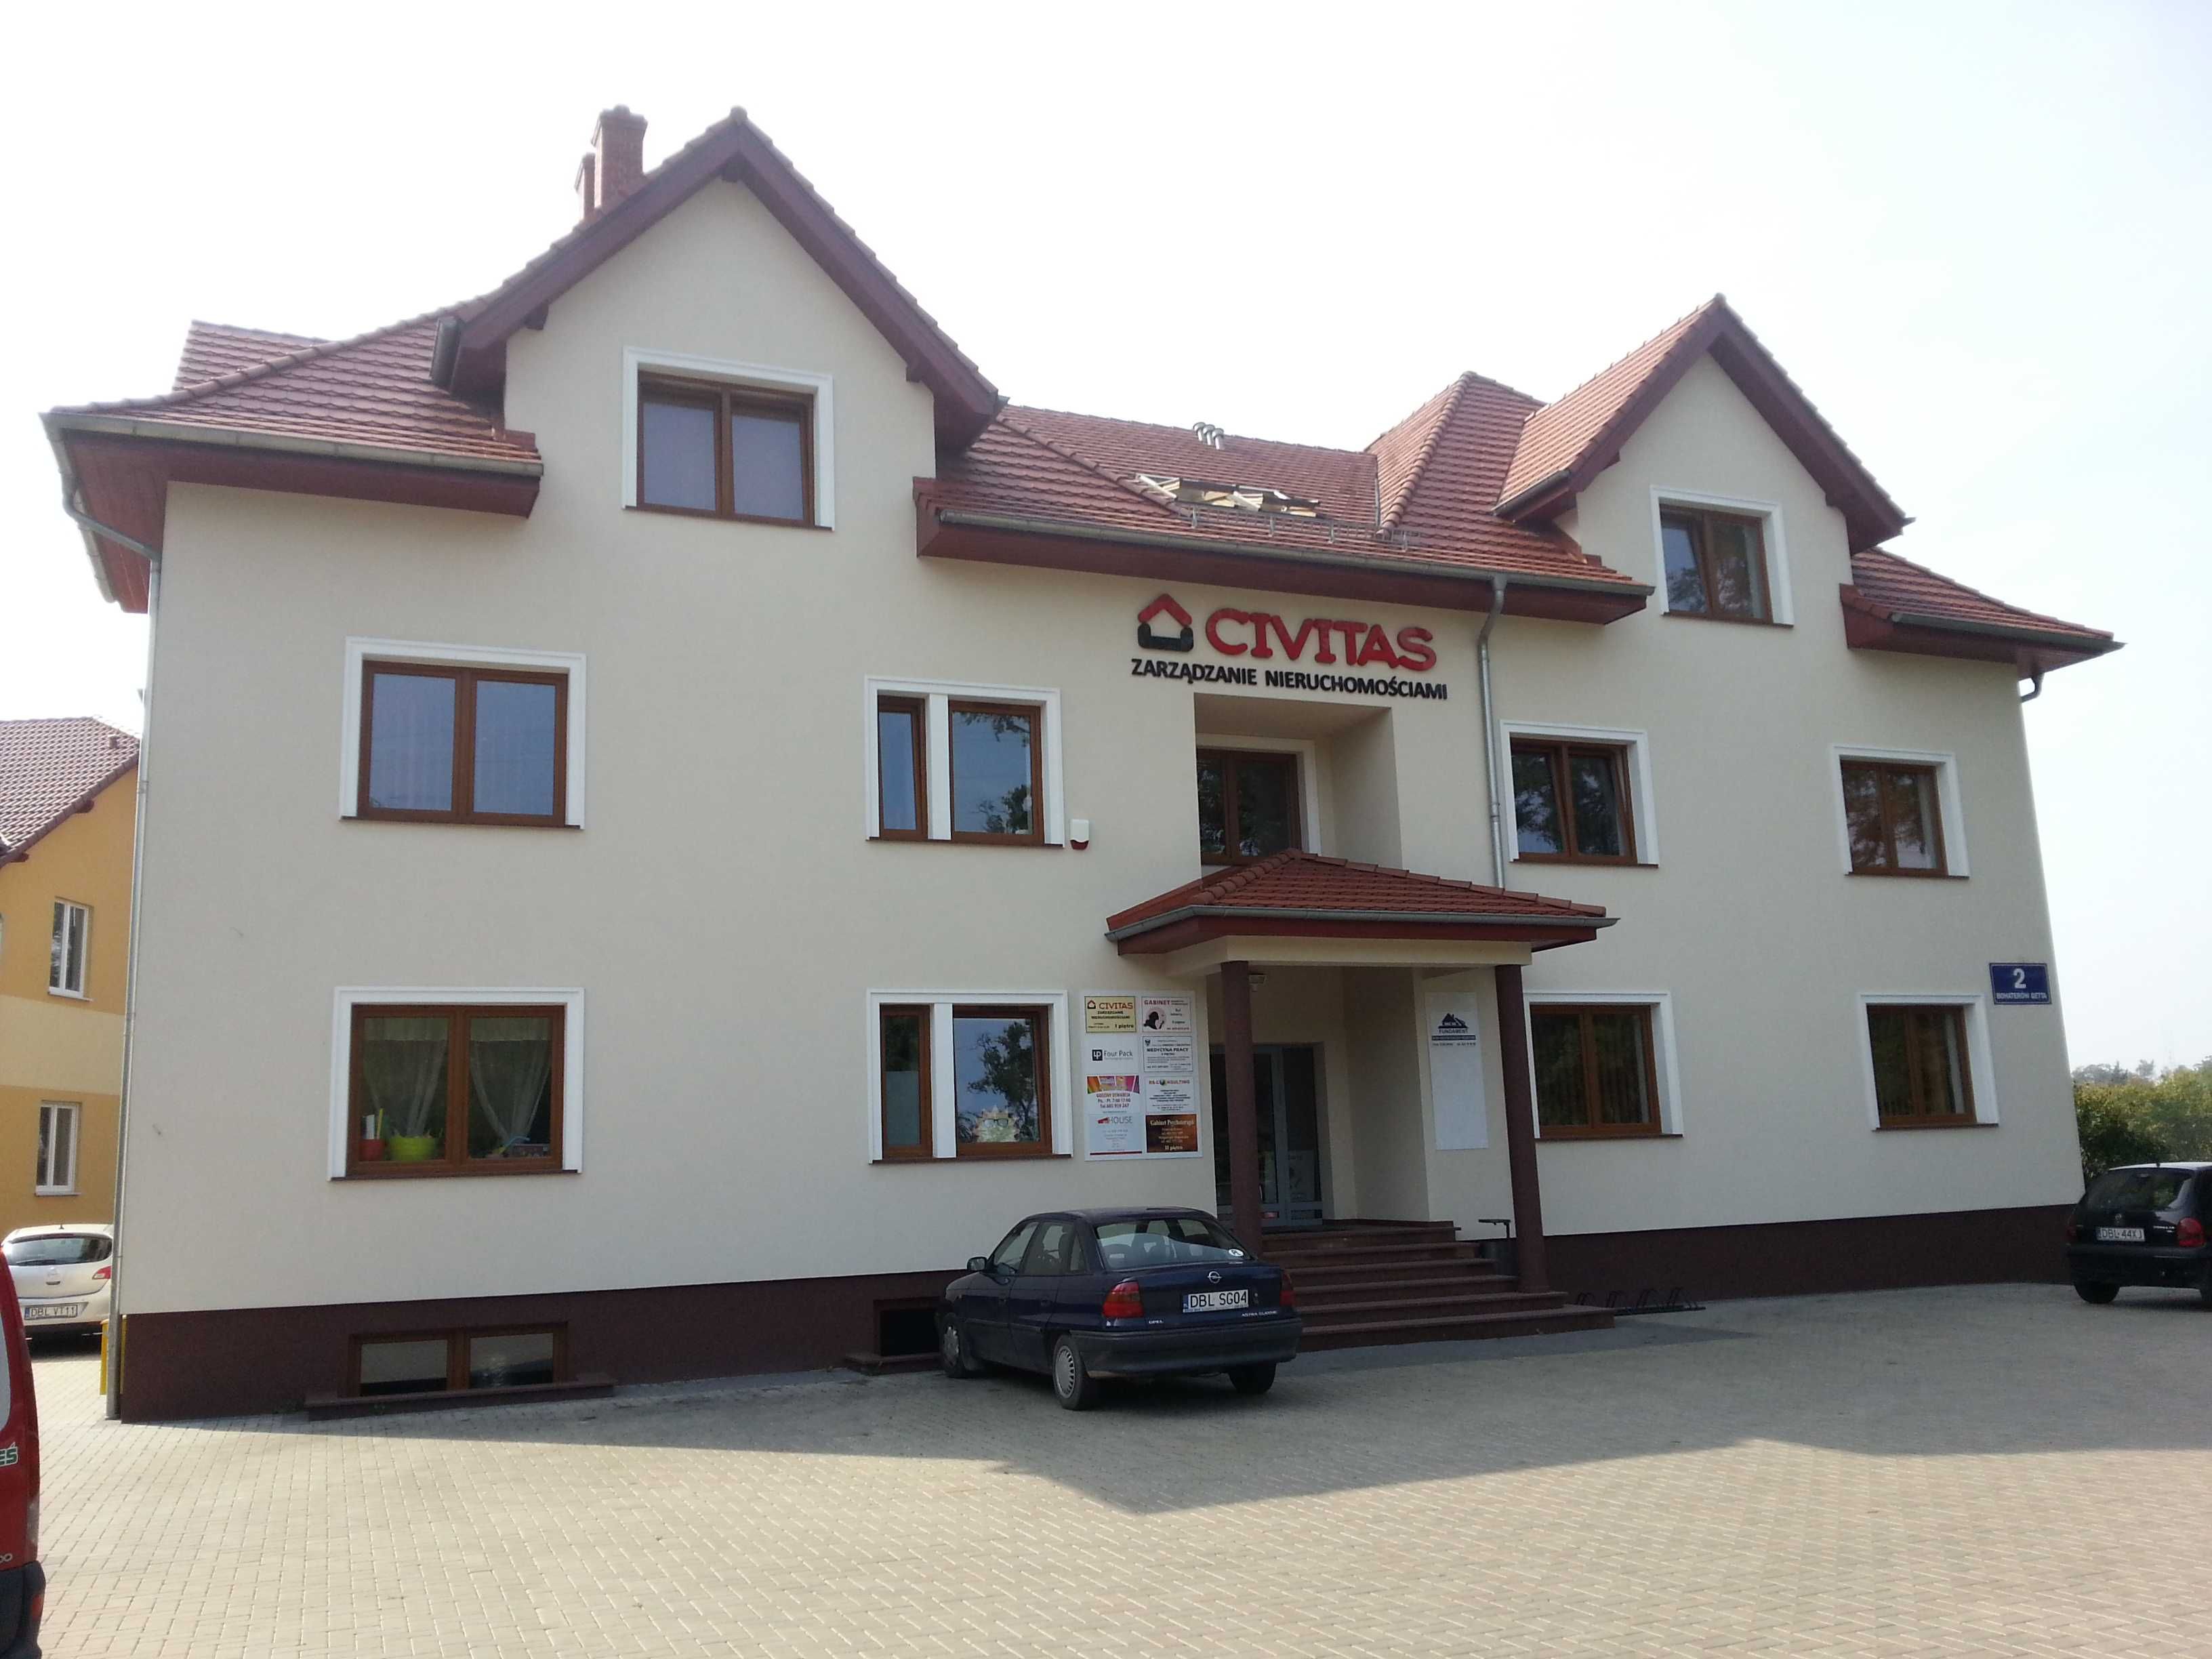 Lokal handlowo - usługowy w centrum Bolesławca (ekonomiczna opcja)